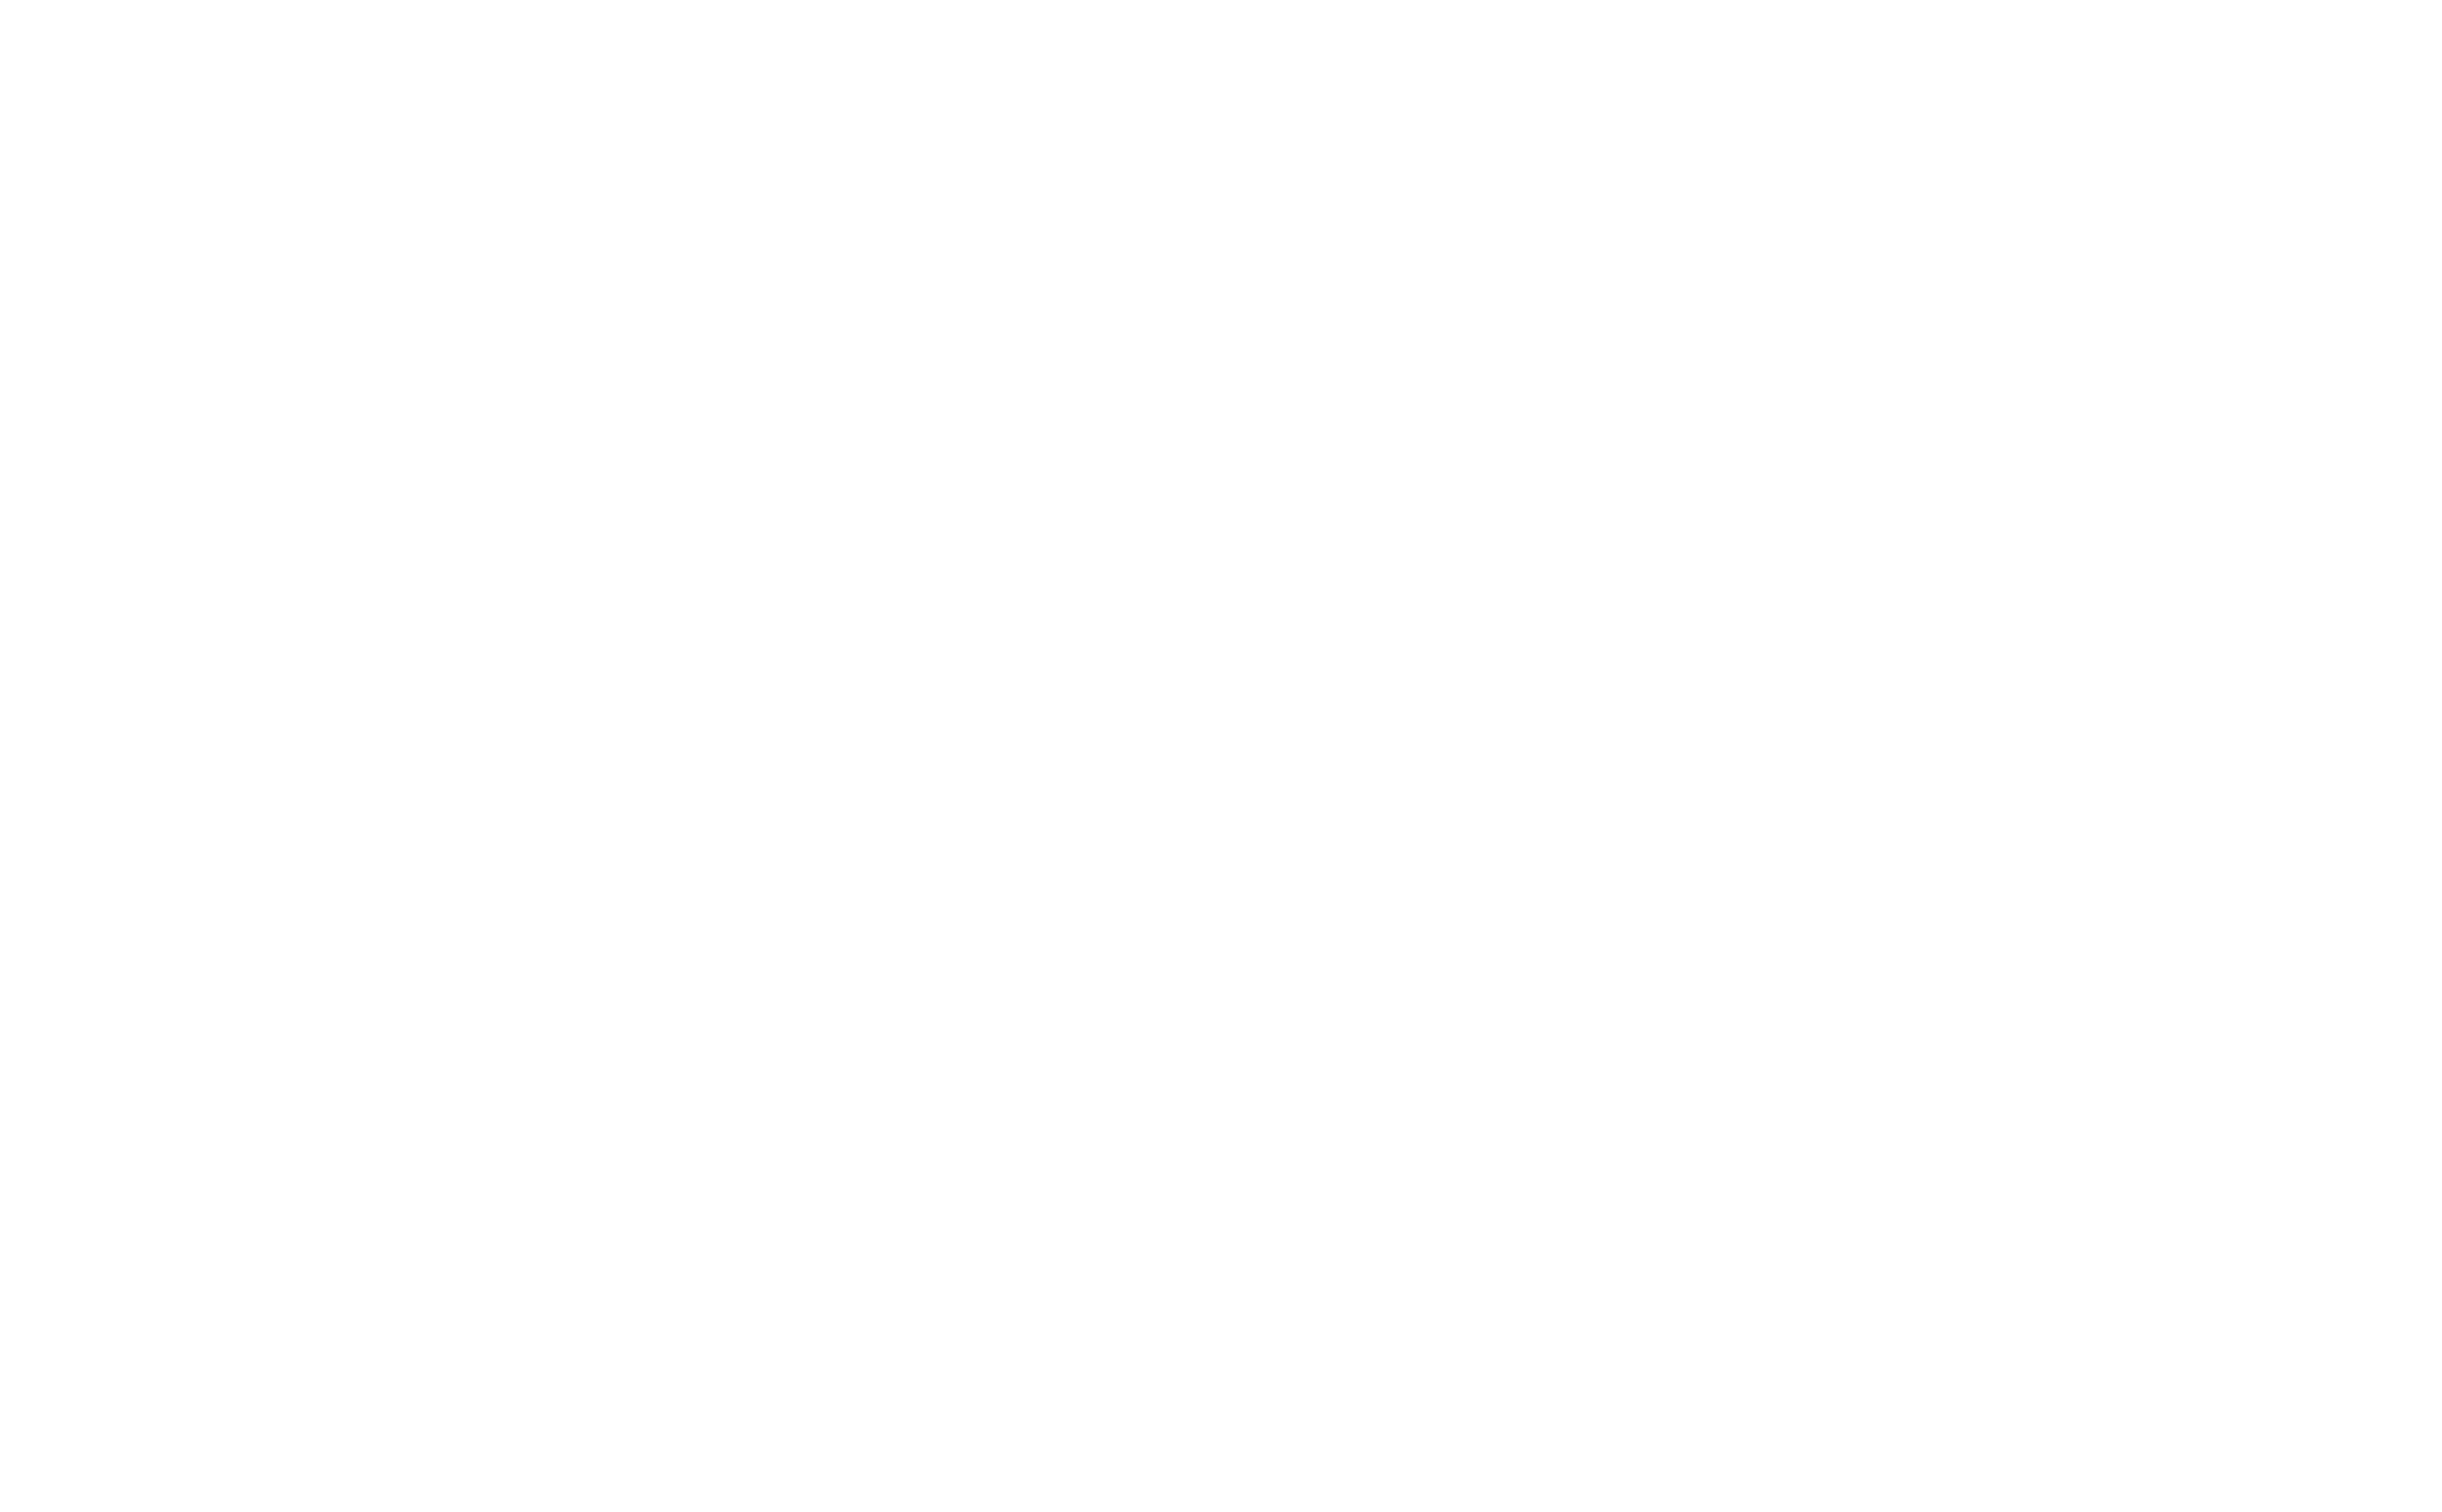 Ellex Logotype by Peek Creative Limited